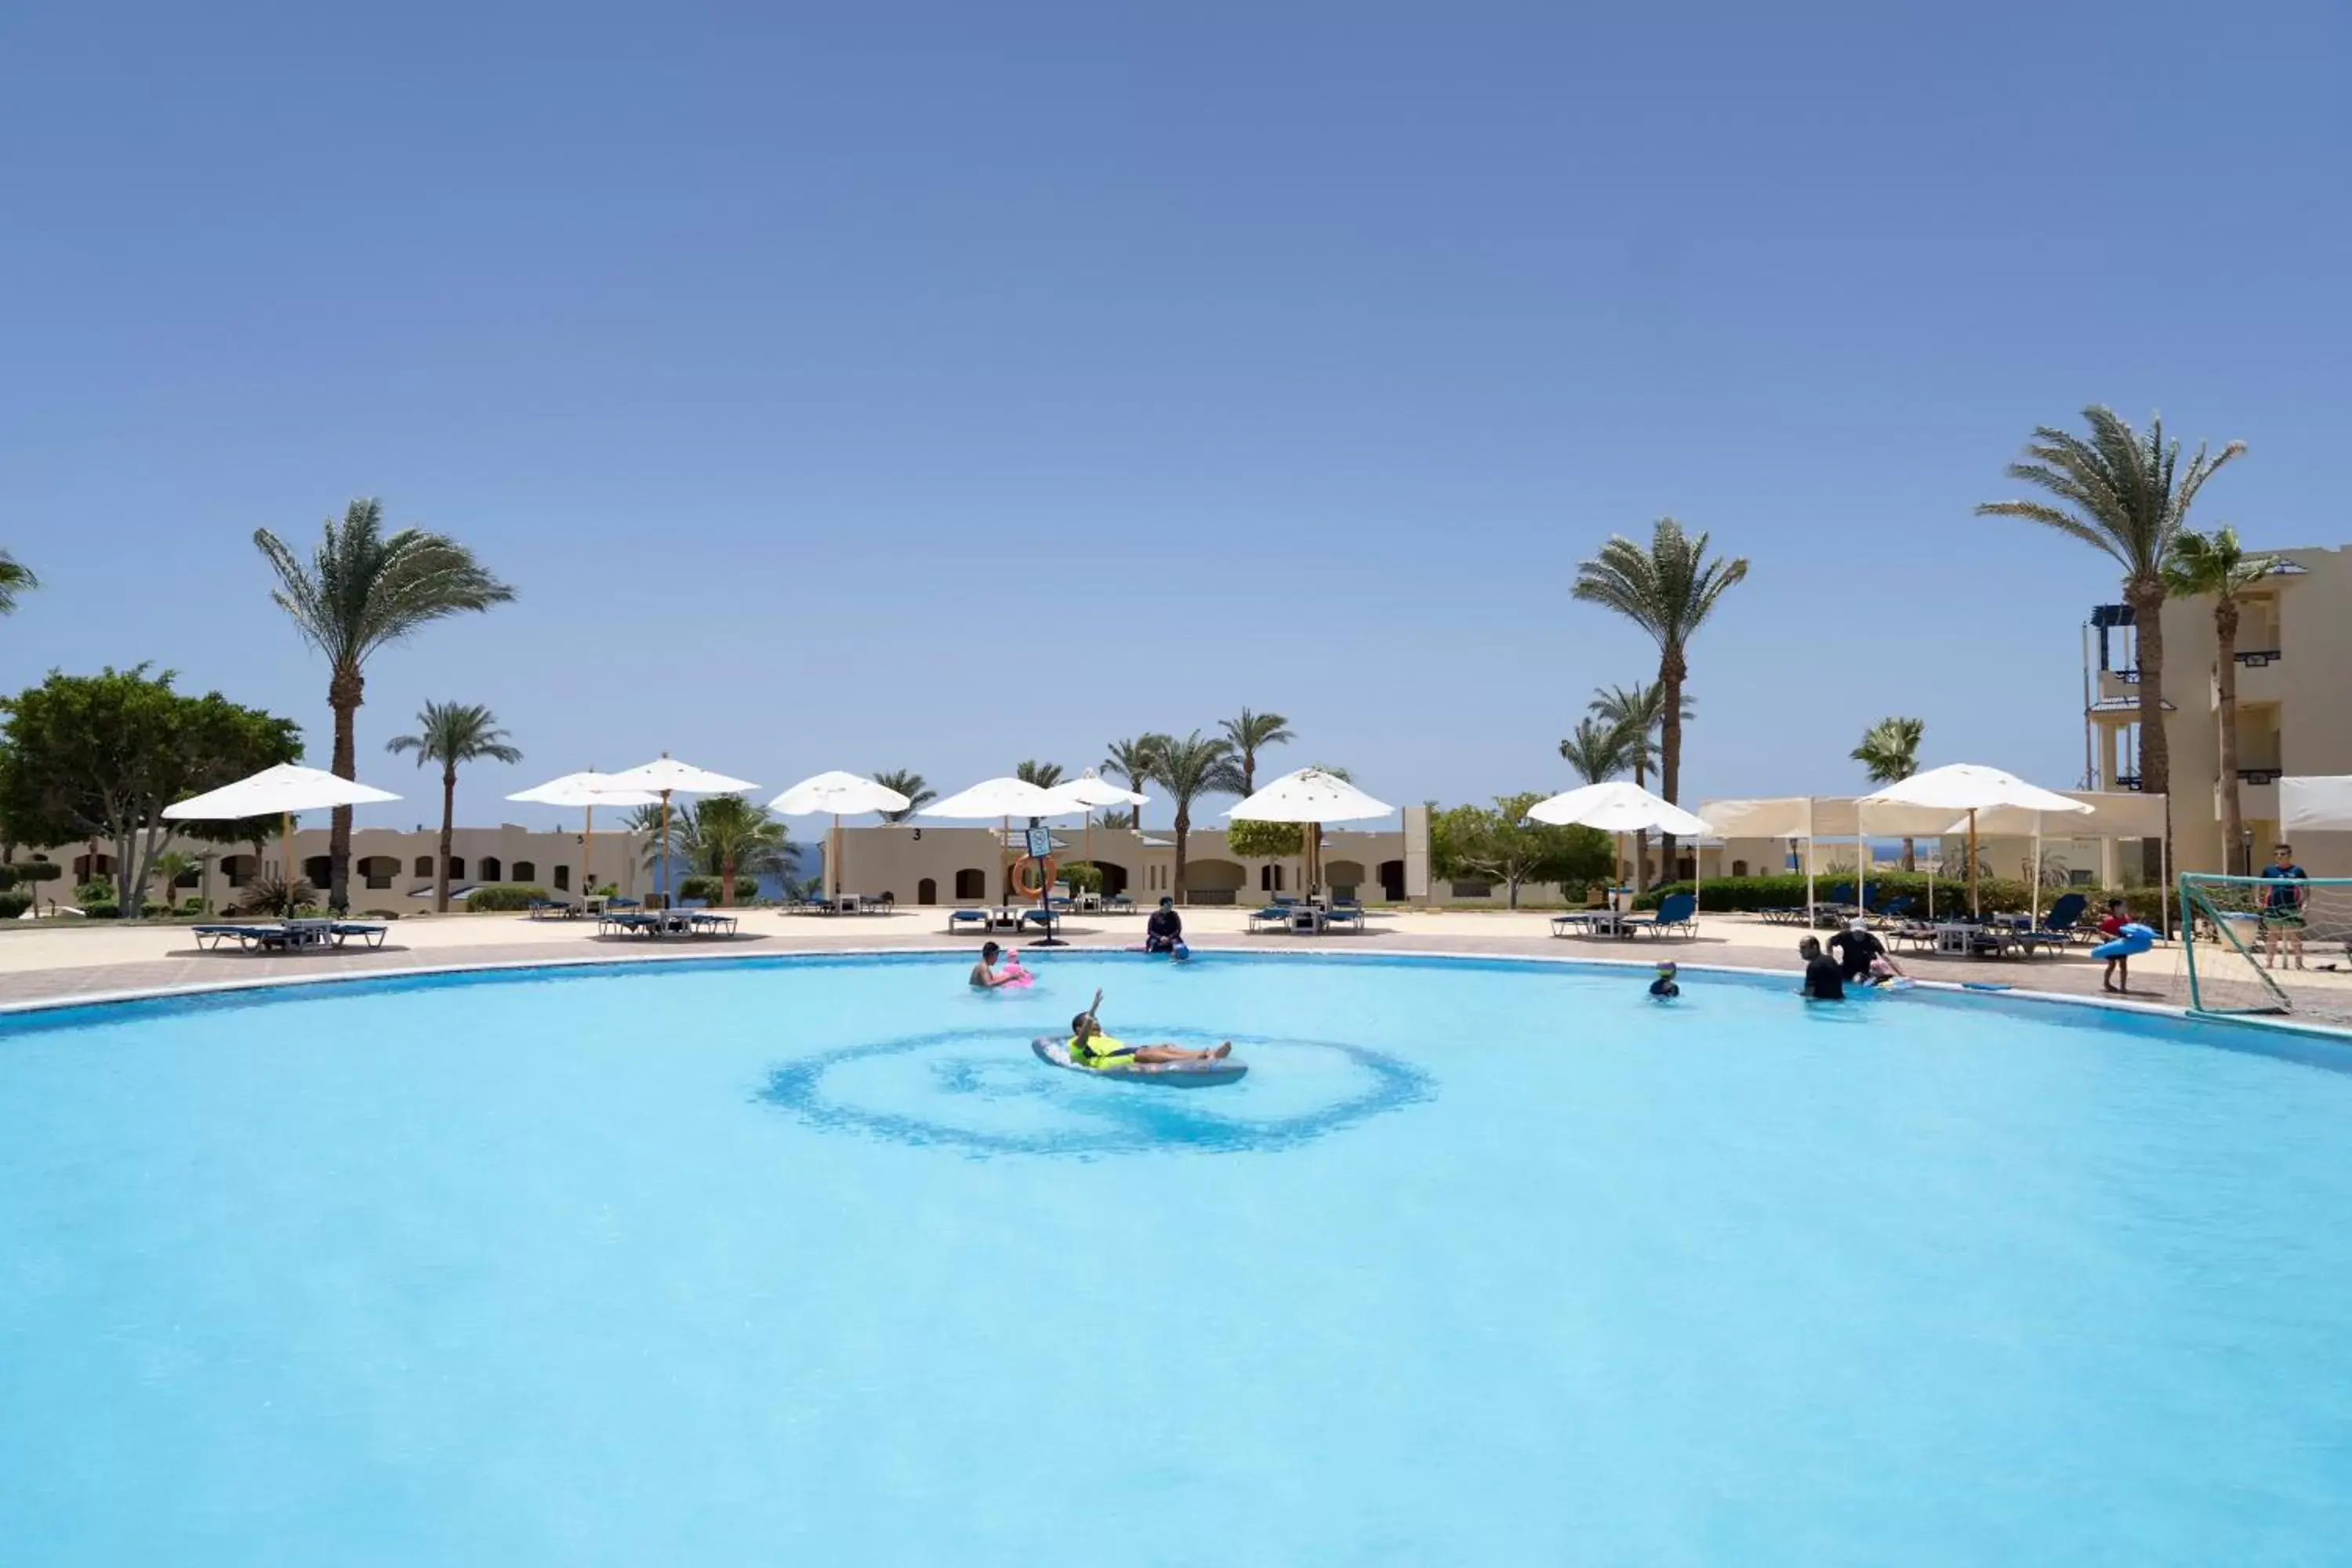 Swimming Pool in Grand Oasis Resort